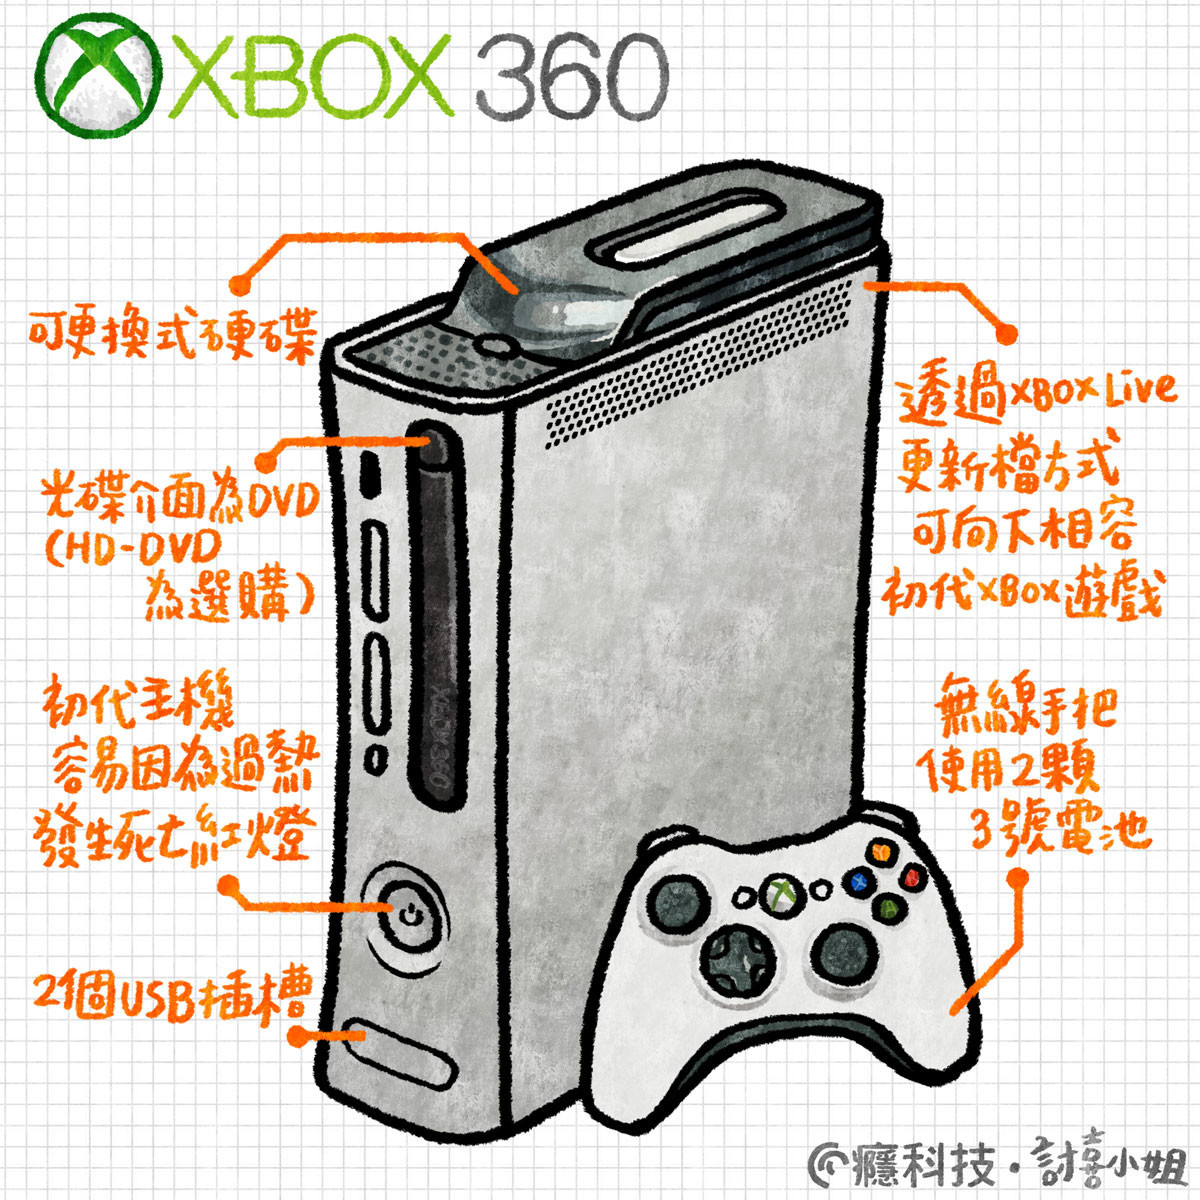 經典技研堂 給予玩家最佳360度全方位遊戲體驗的優秀主機 Xbox 360 1294 Cool3c